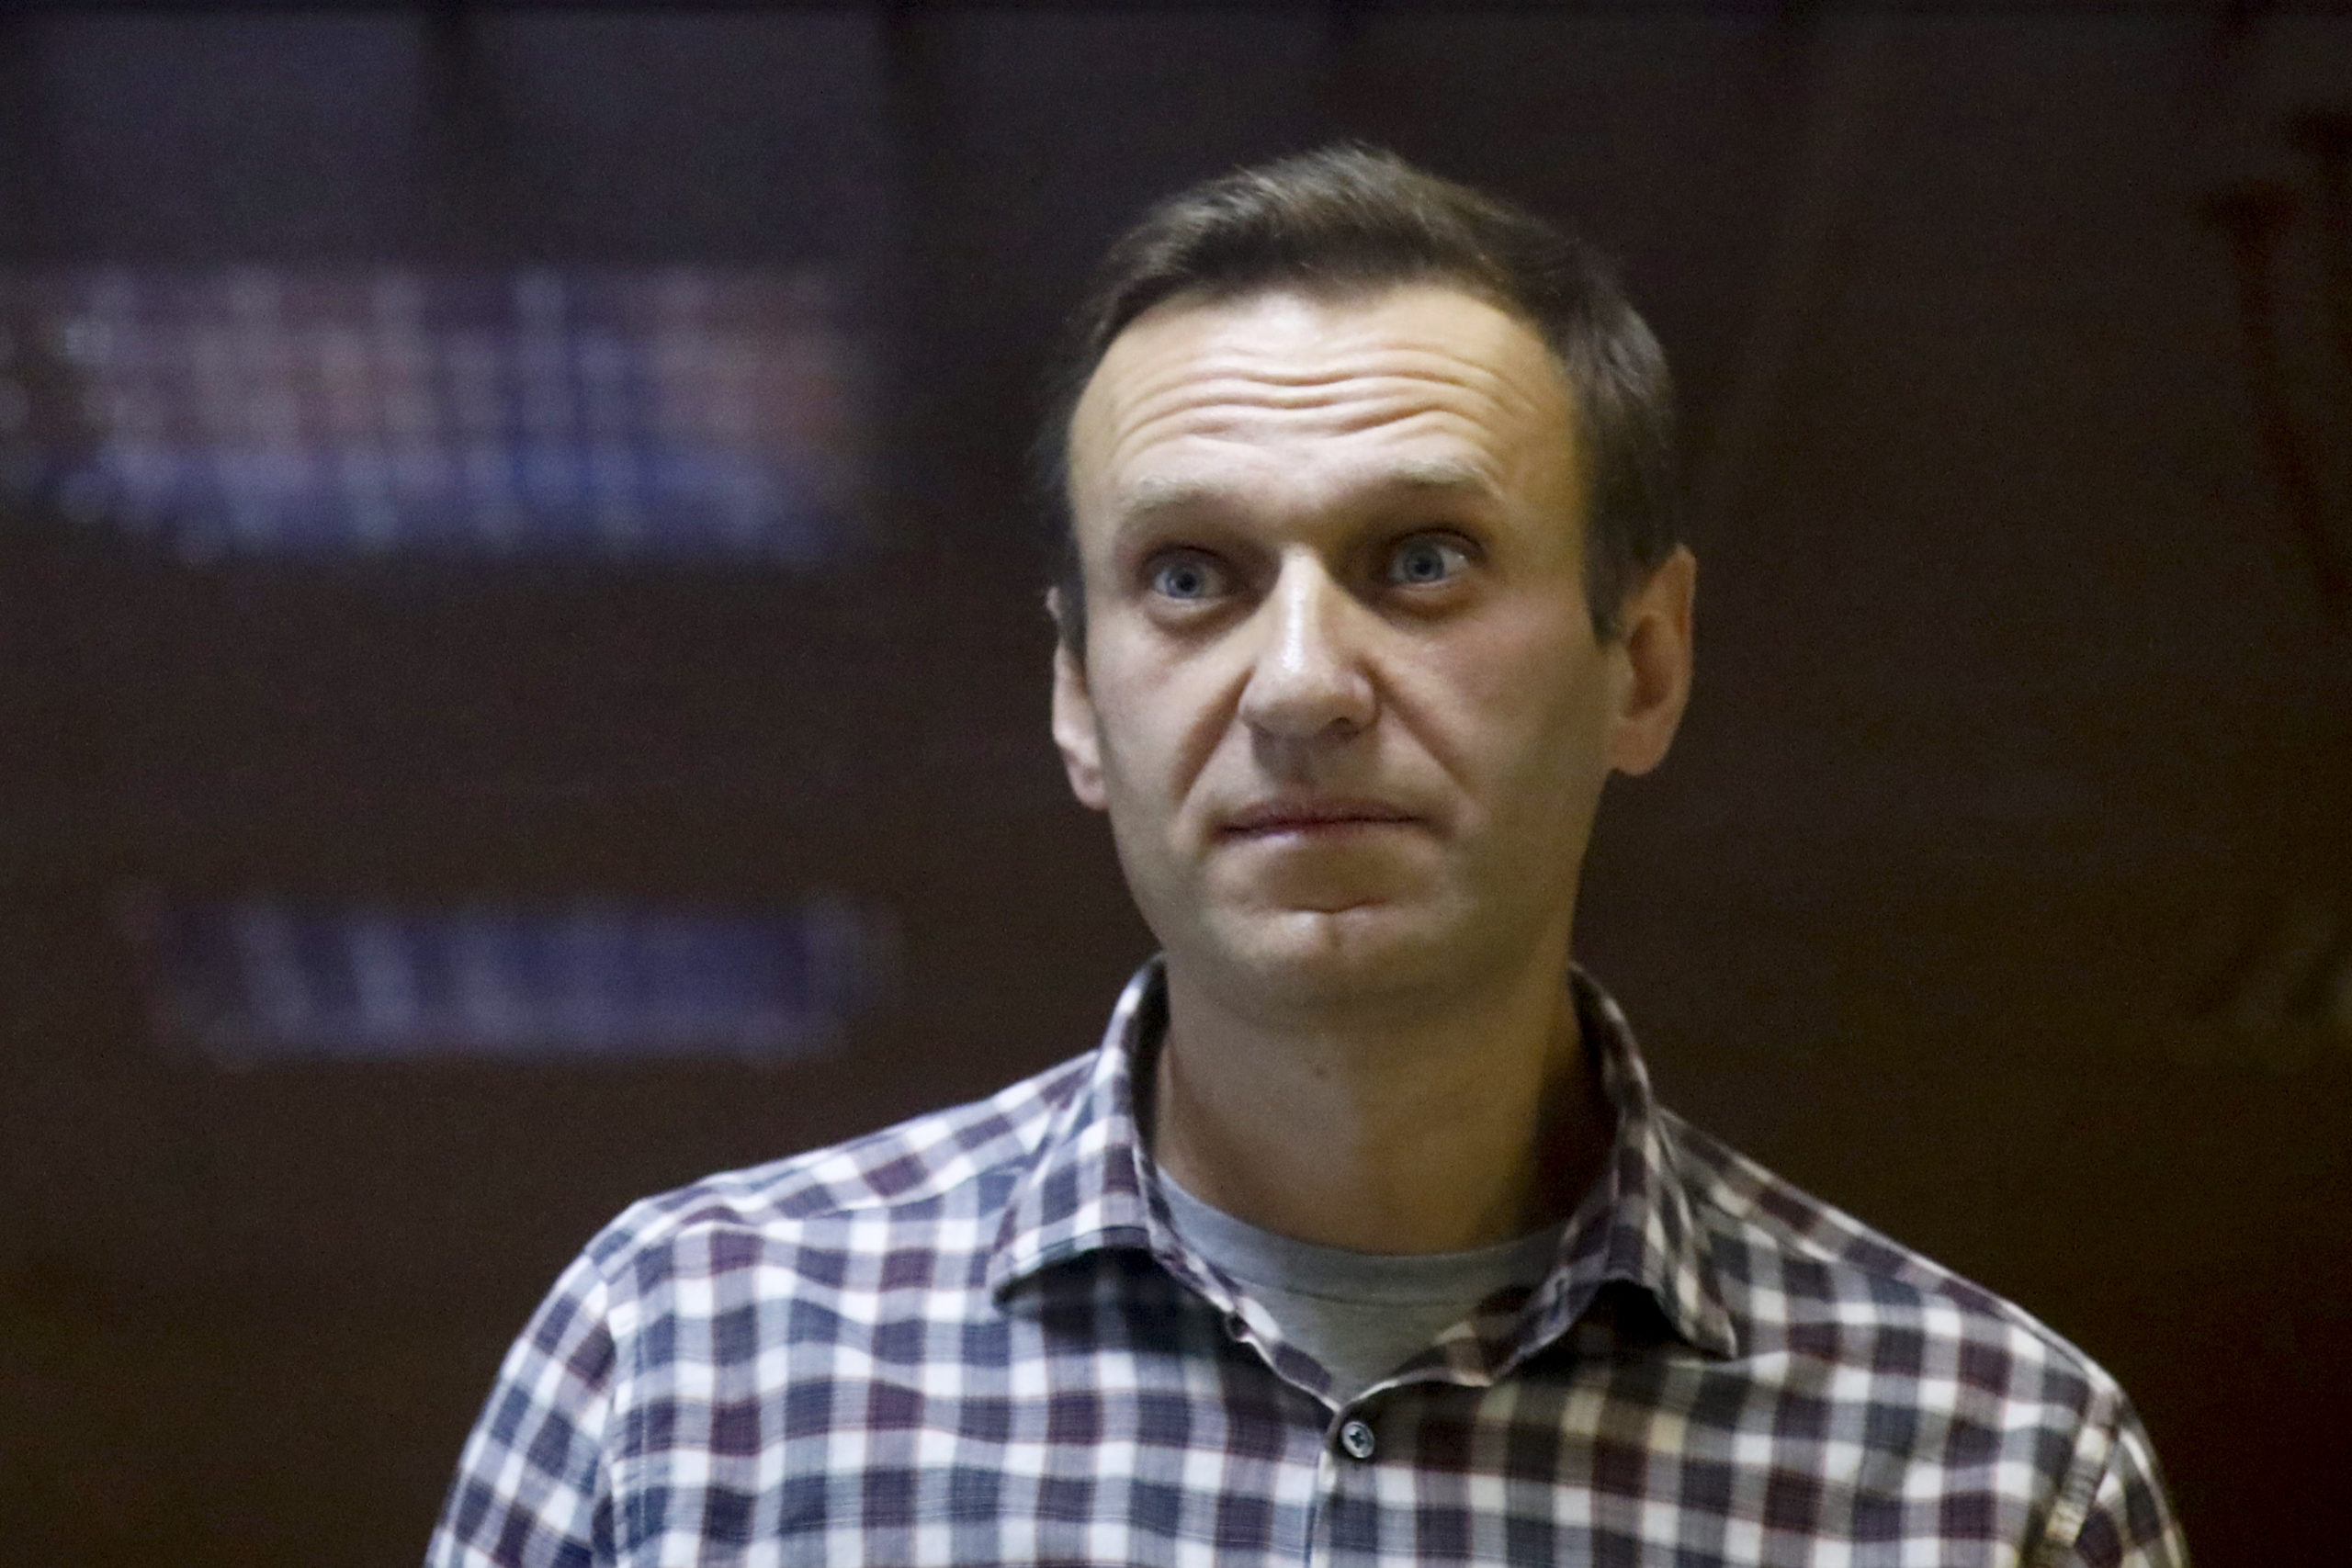 Αλεξέι Ναβάλνι: Ρώσοι δημοτικοί σύμβουλοι υπογράφουν επιστολή υποστήριξής του #FreeNavalny